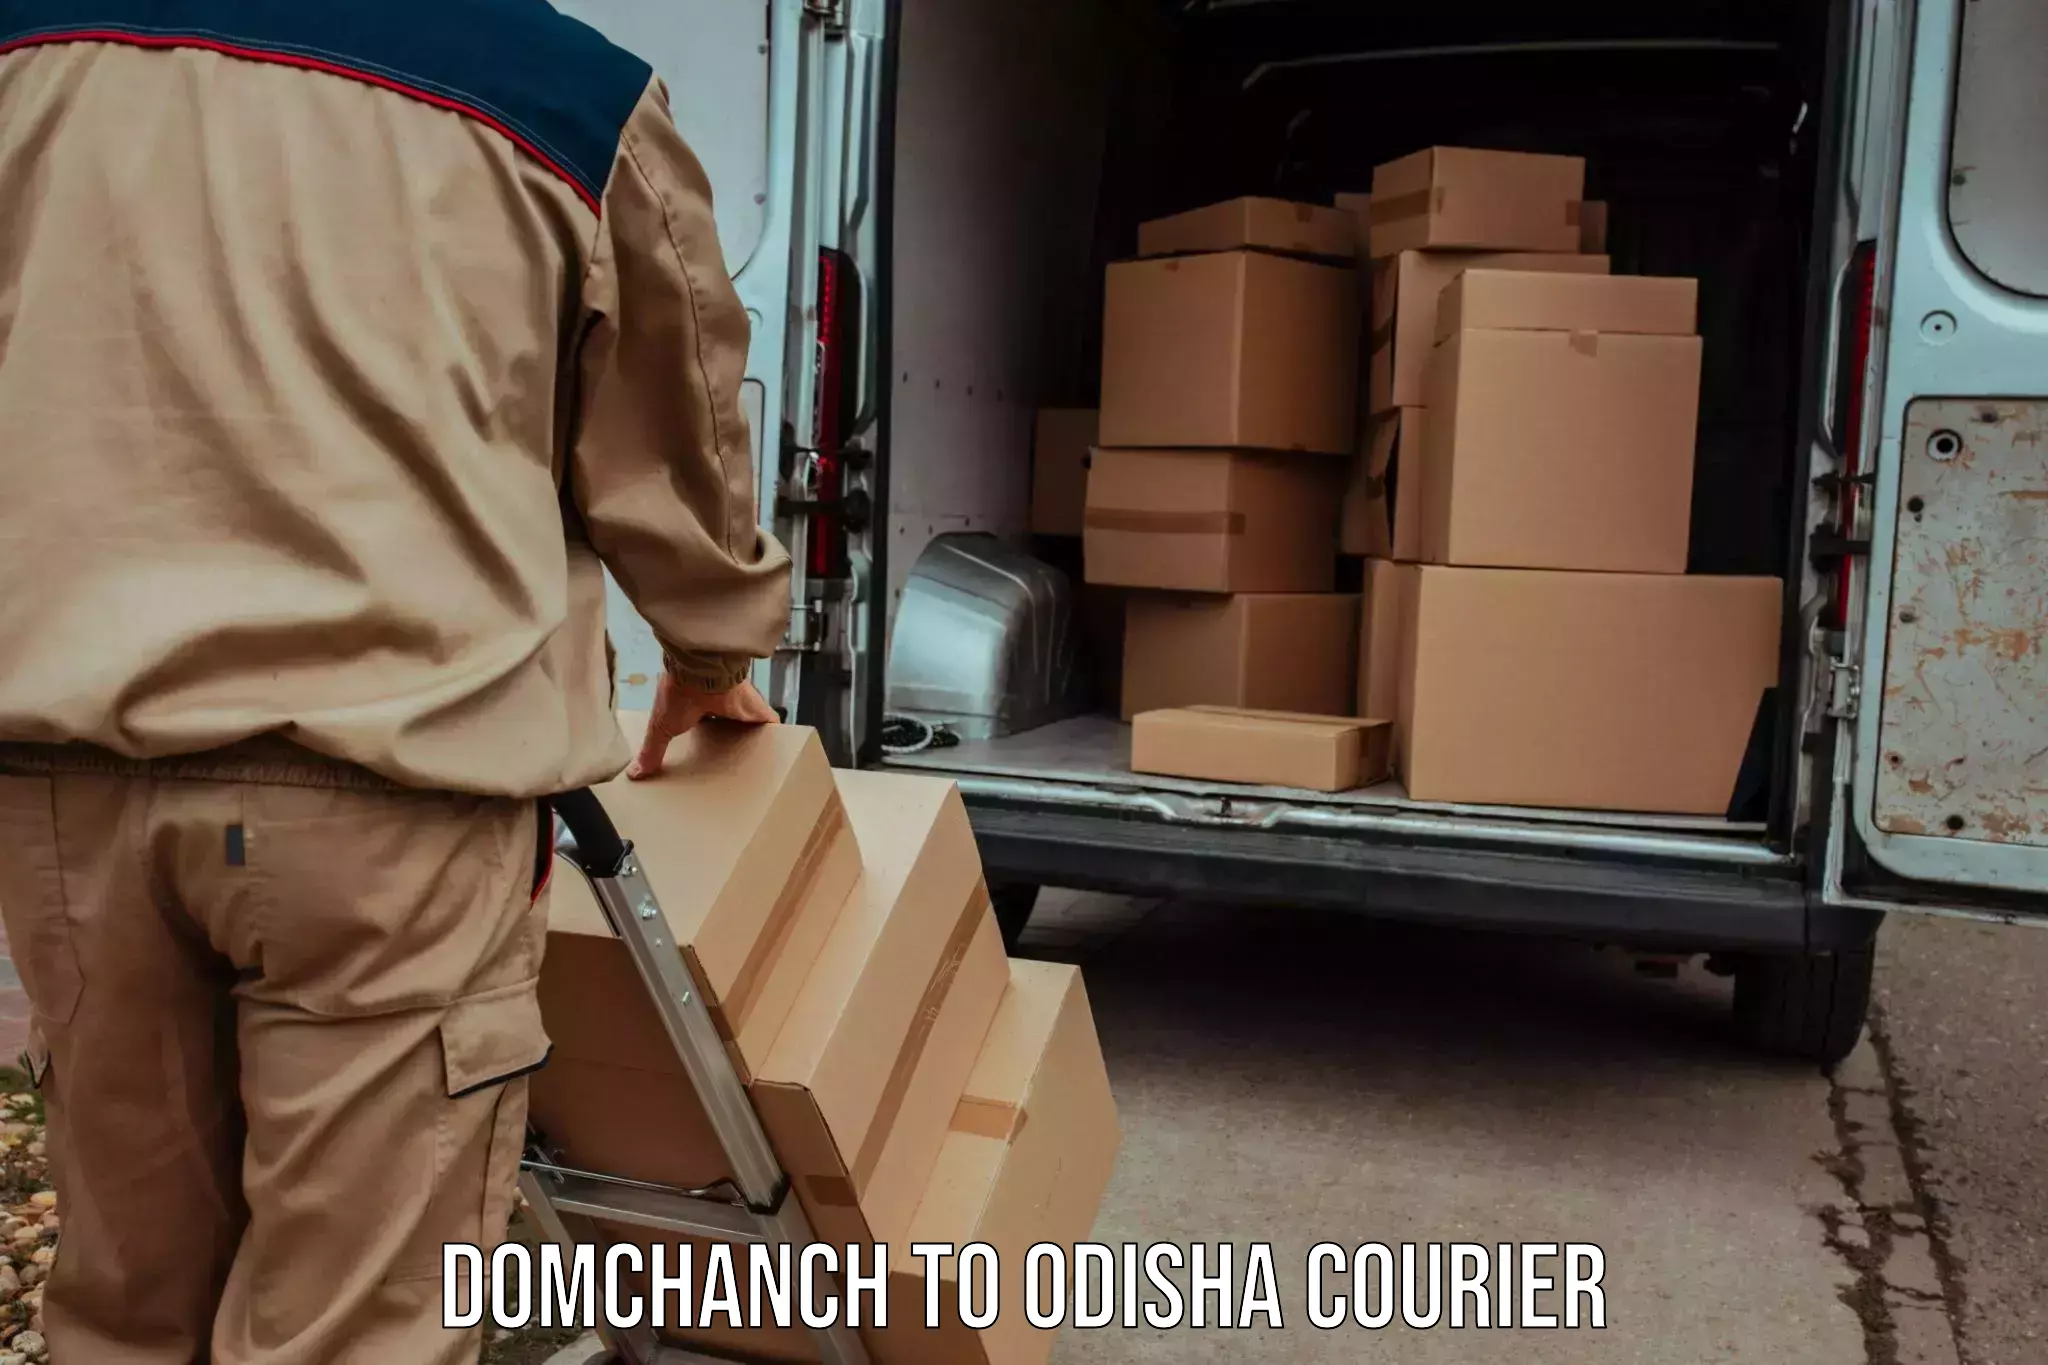 User-friendly courier app Domchanch to Sambalpur